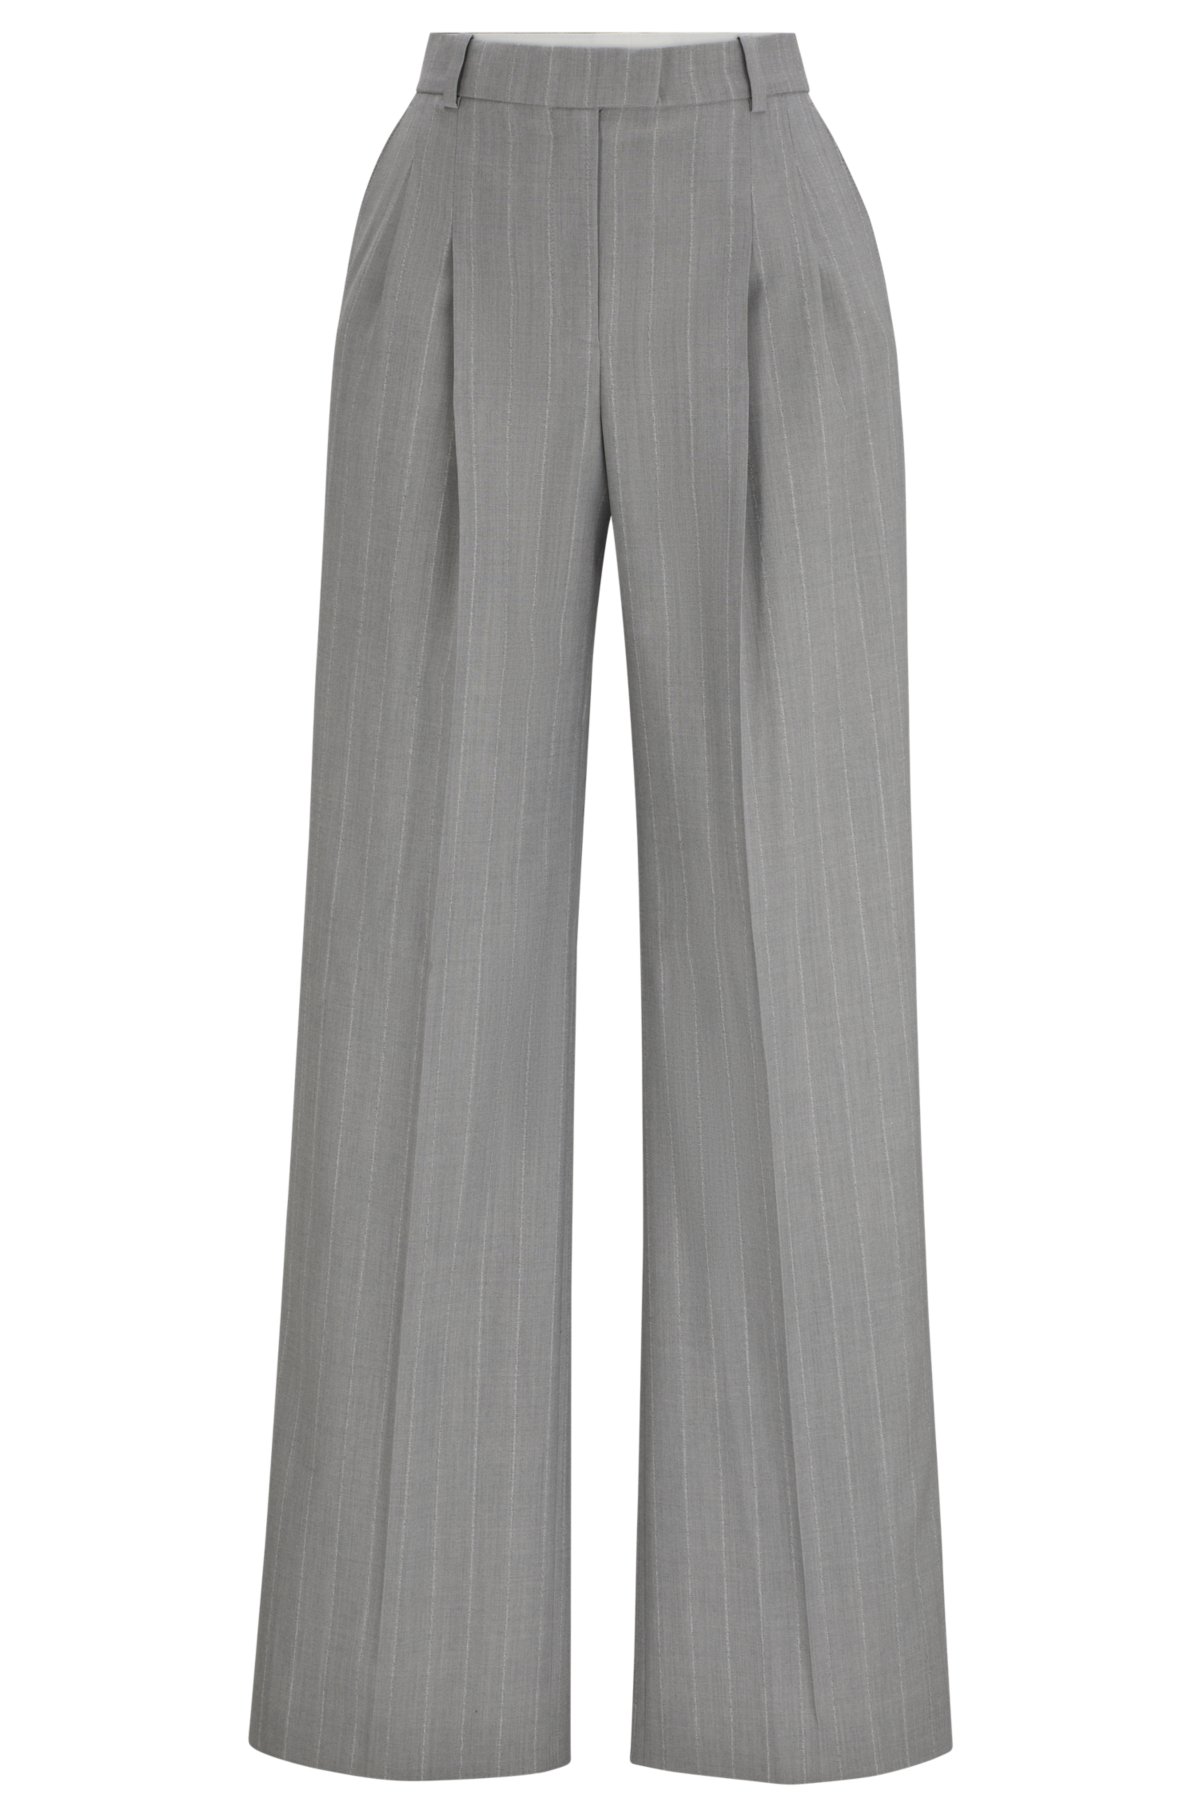 NAOMI x BOSS wide-leg trousers in pinstripe virgin wool, Light Grey